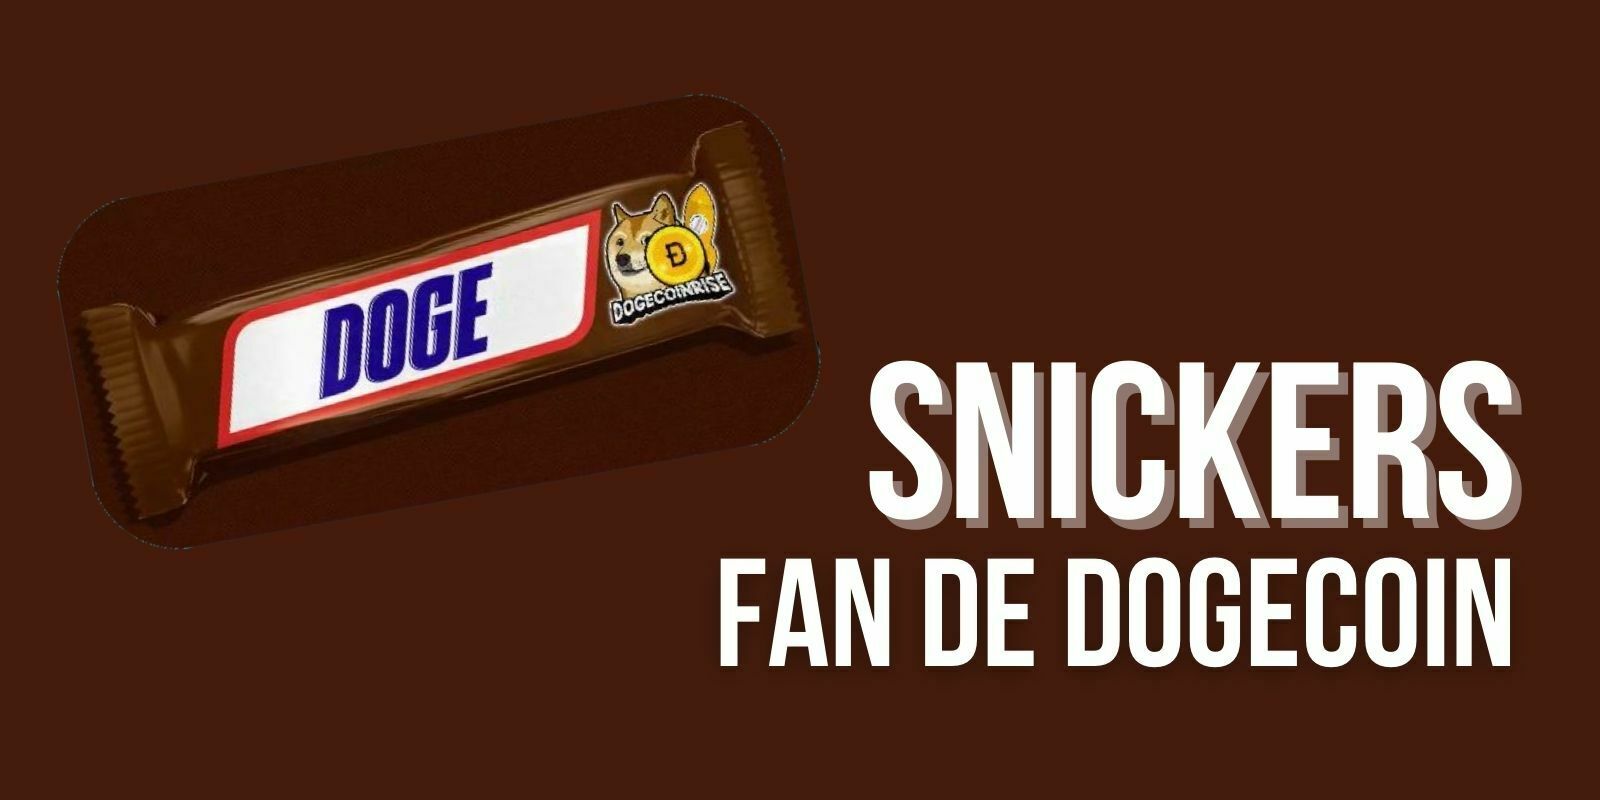 La marque Snickers clame son amour pour le Dogecoin (DOGE)